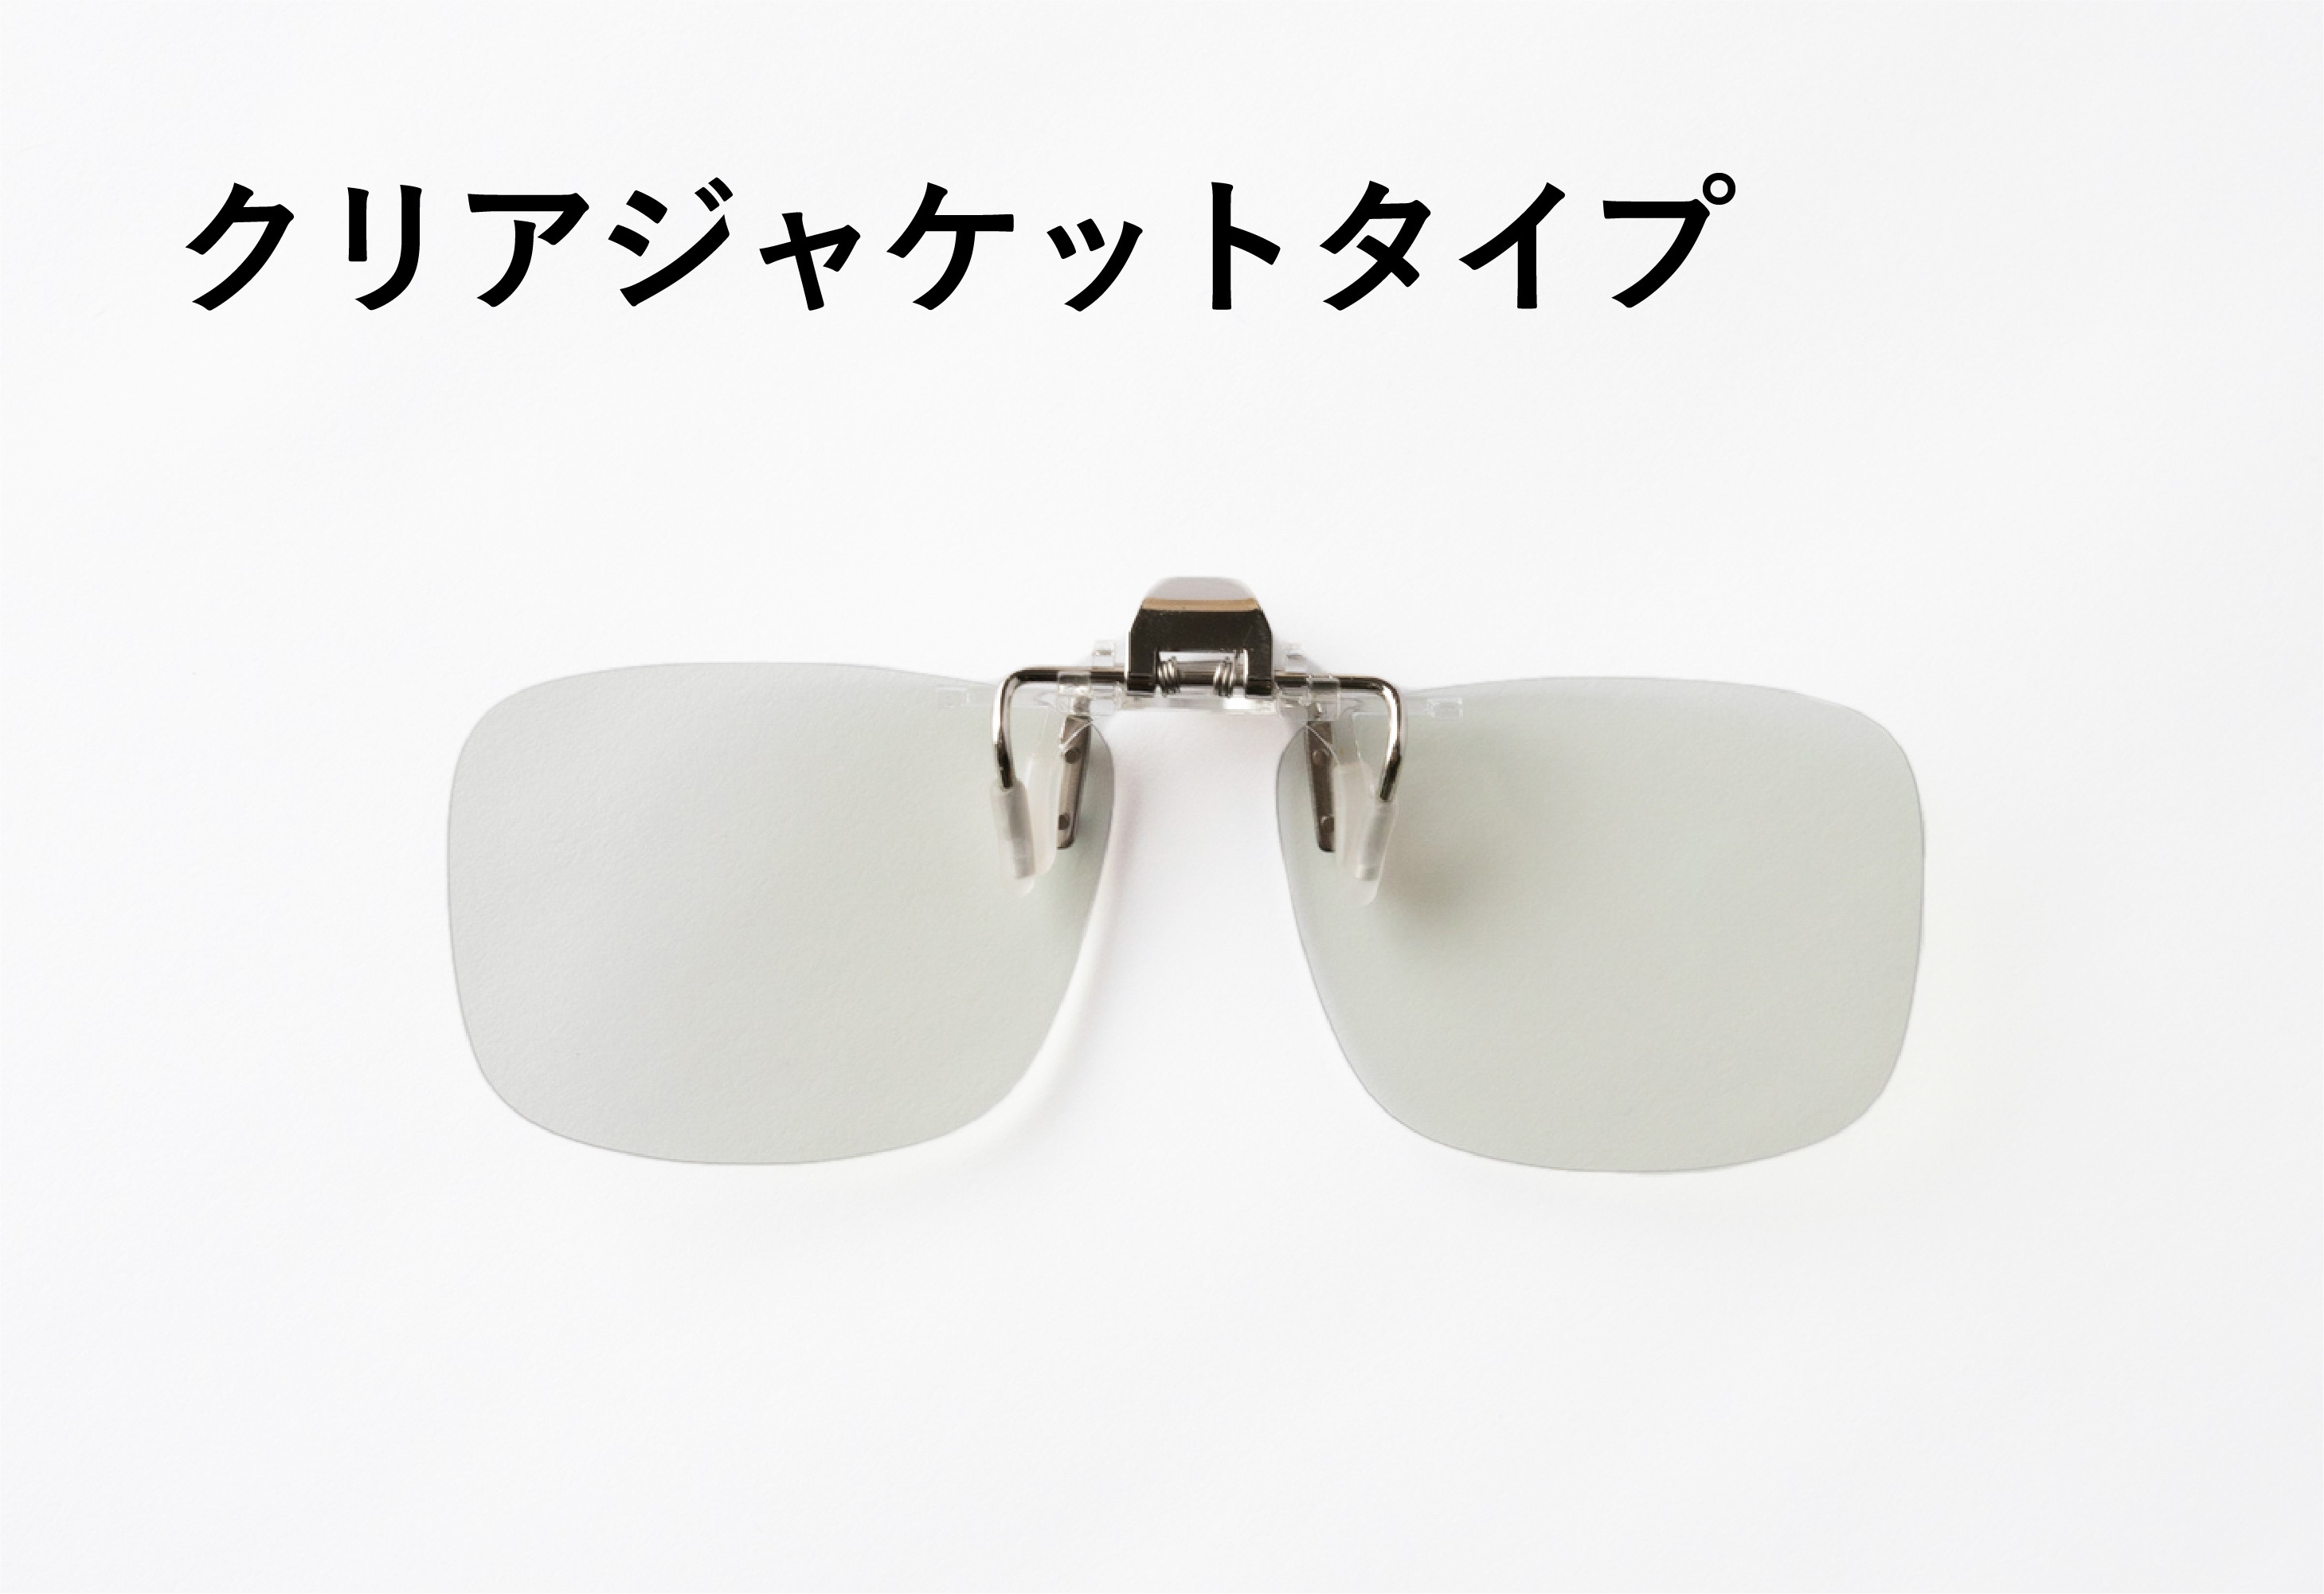 夜専用メガネ「ナイトグラス」を6月25日(金)よりMakuakeにて先行販売